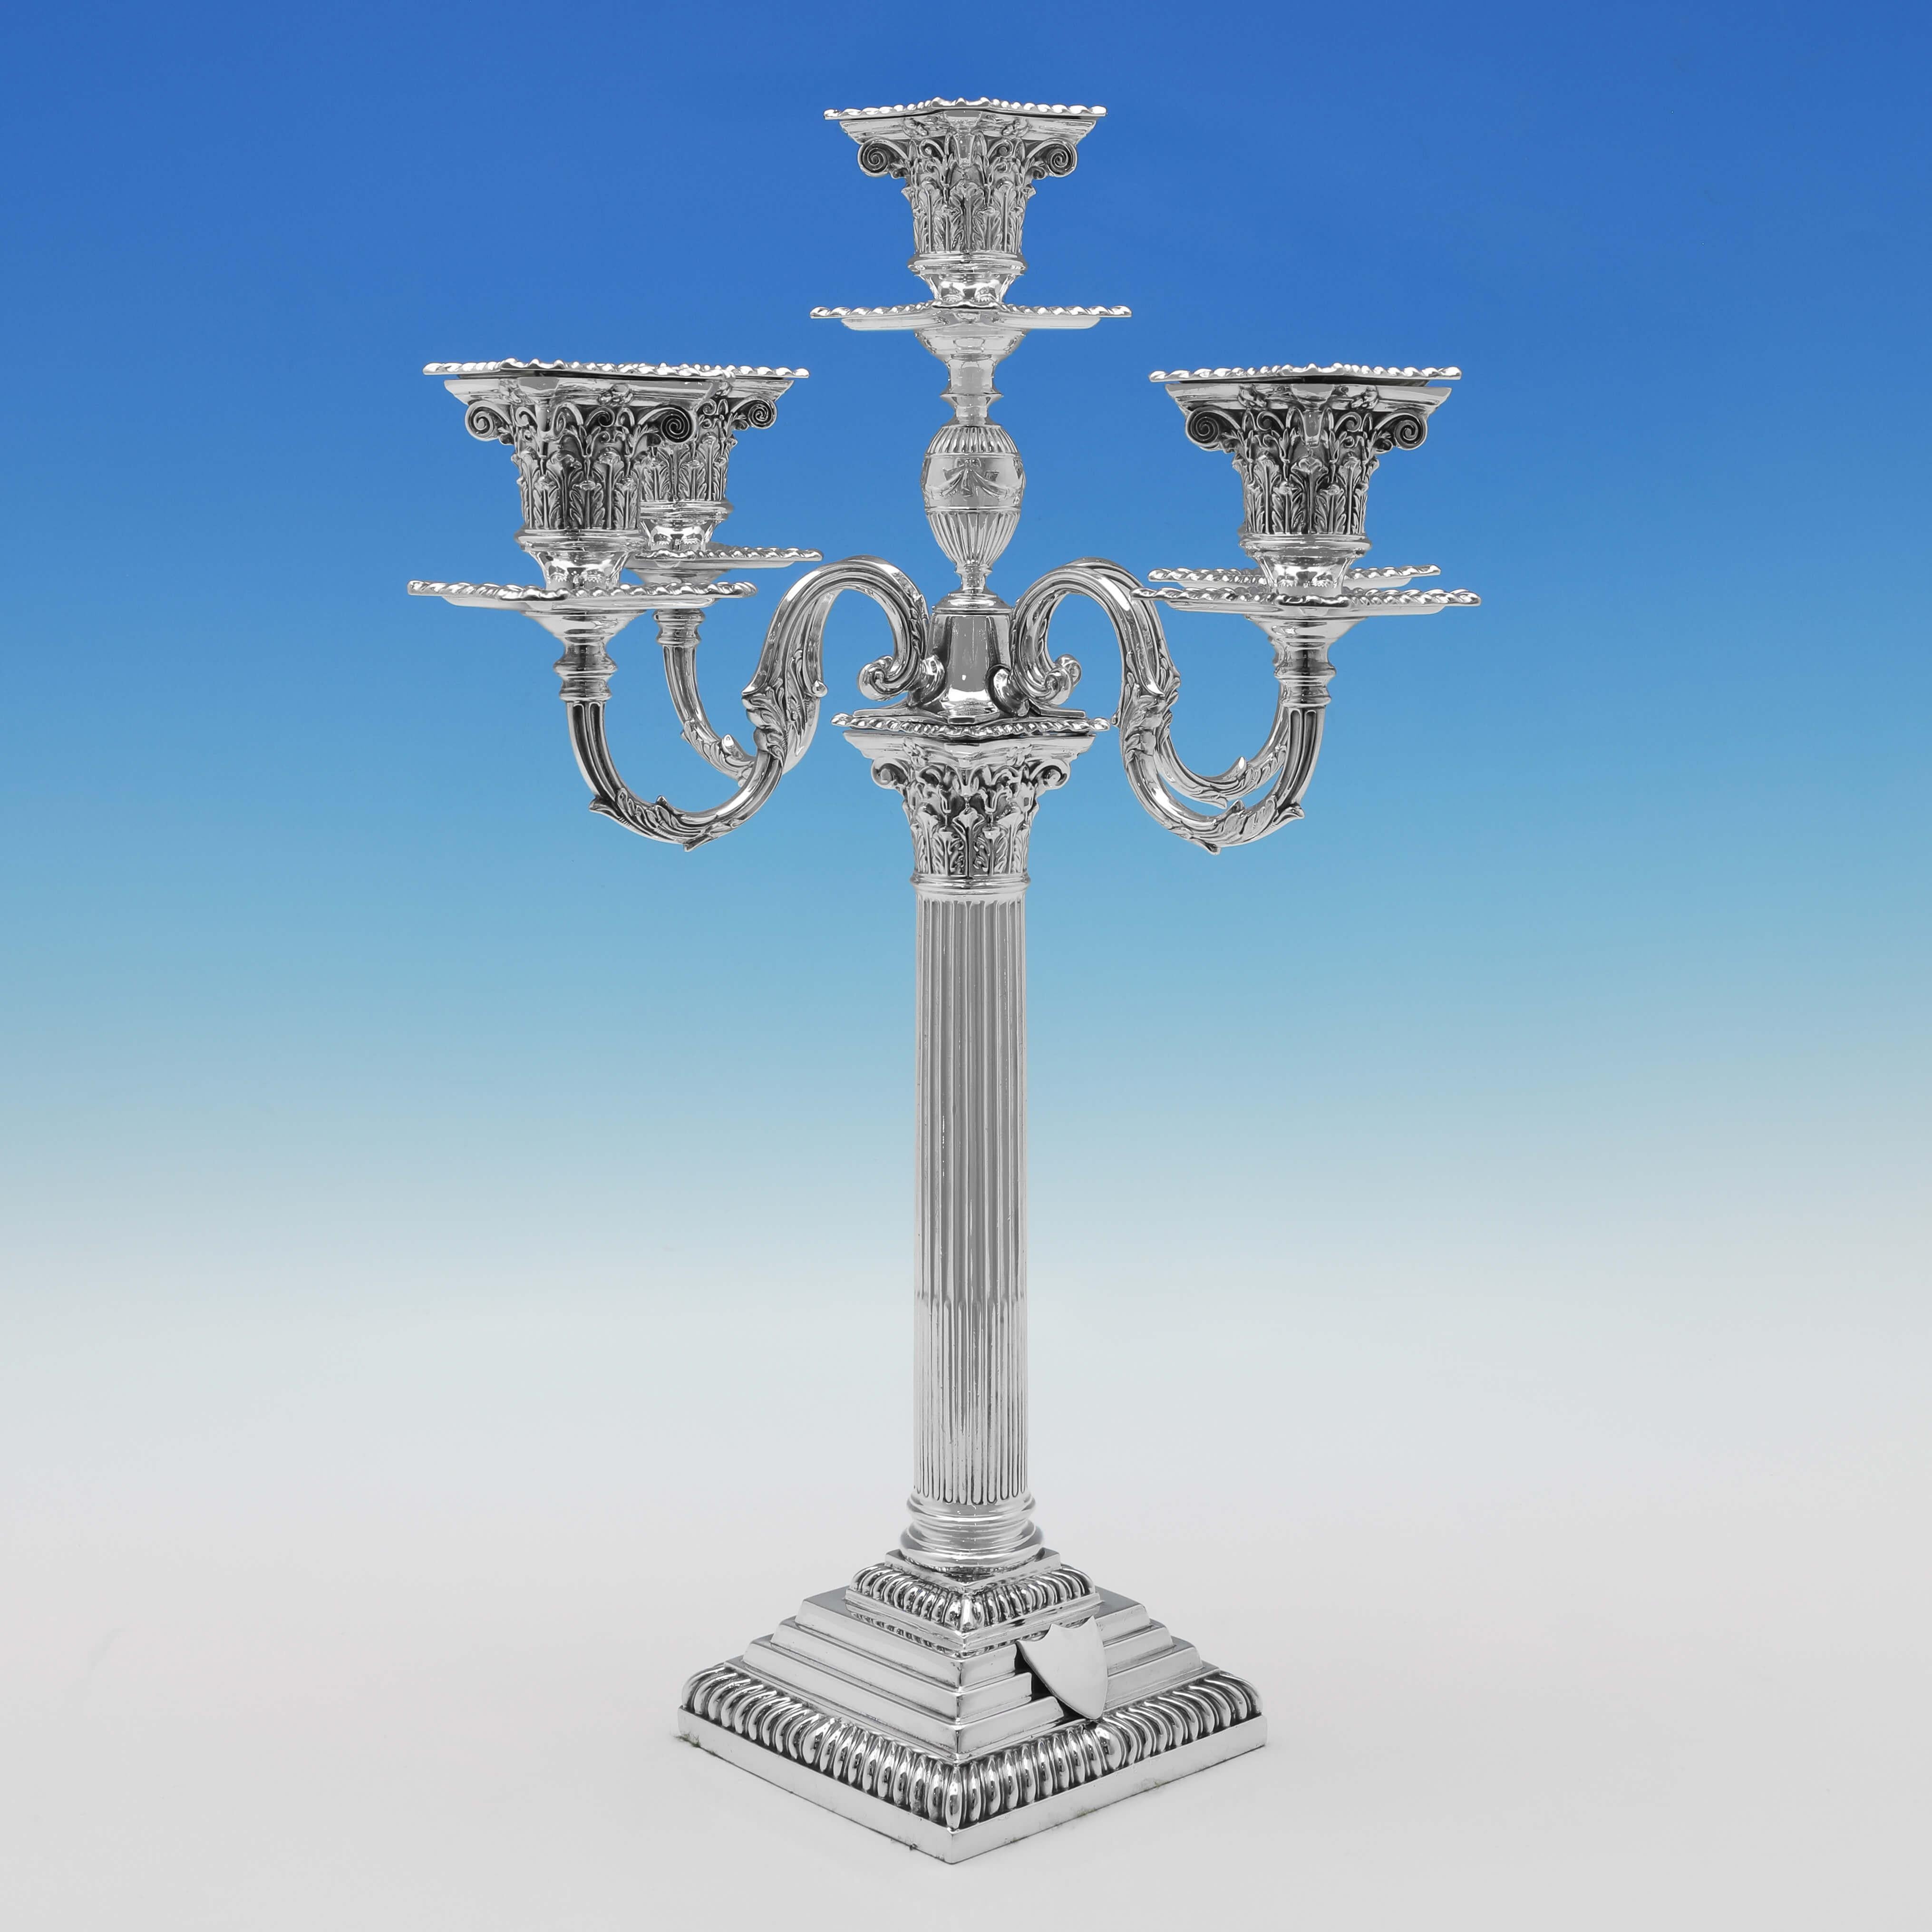 Signée à Londres en 1896 par Carrington & Co, cette paire de chandeliers antiques en sterling est de style classique romain 